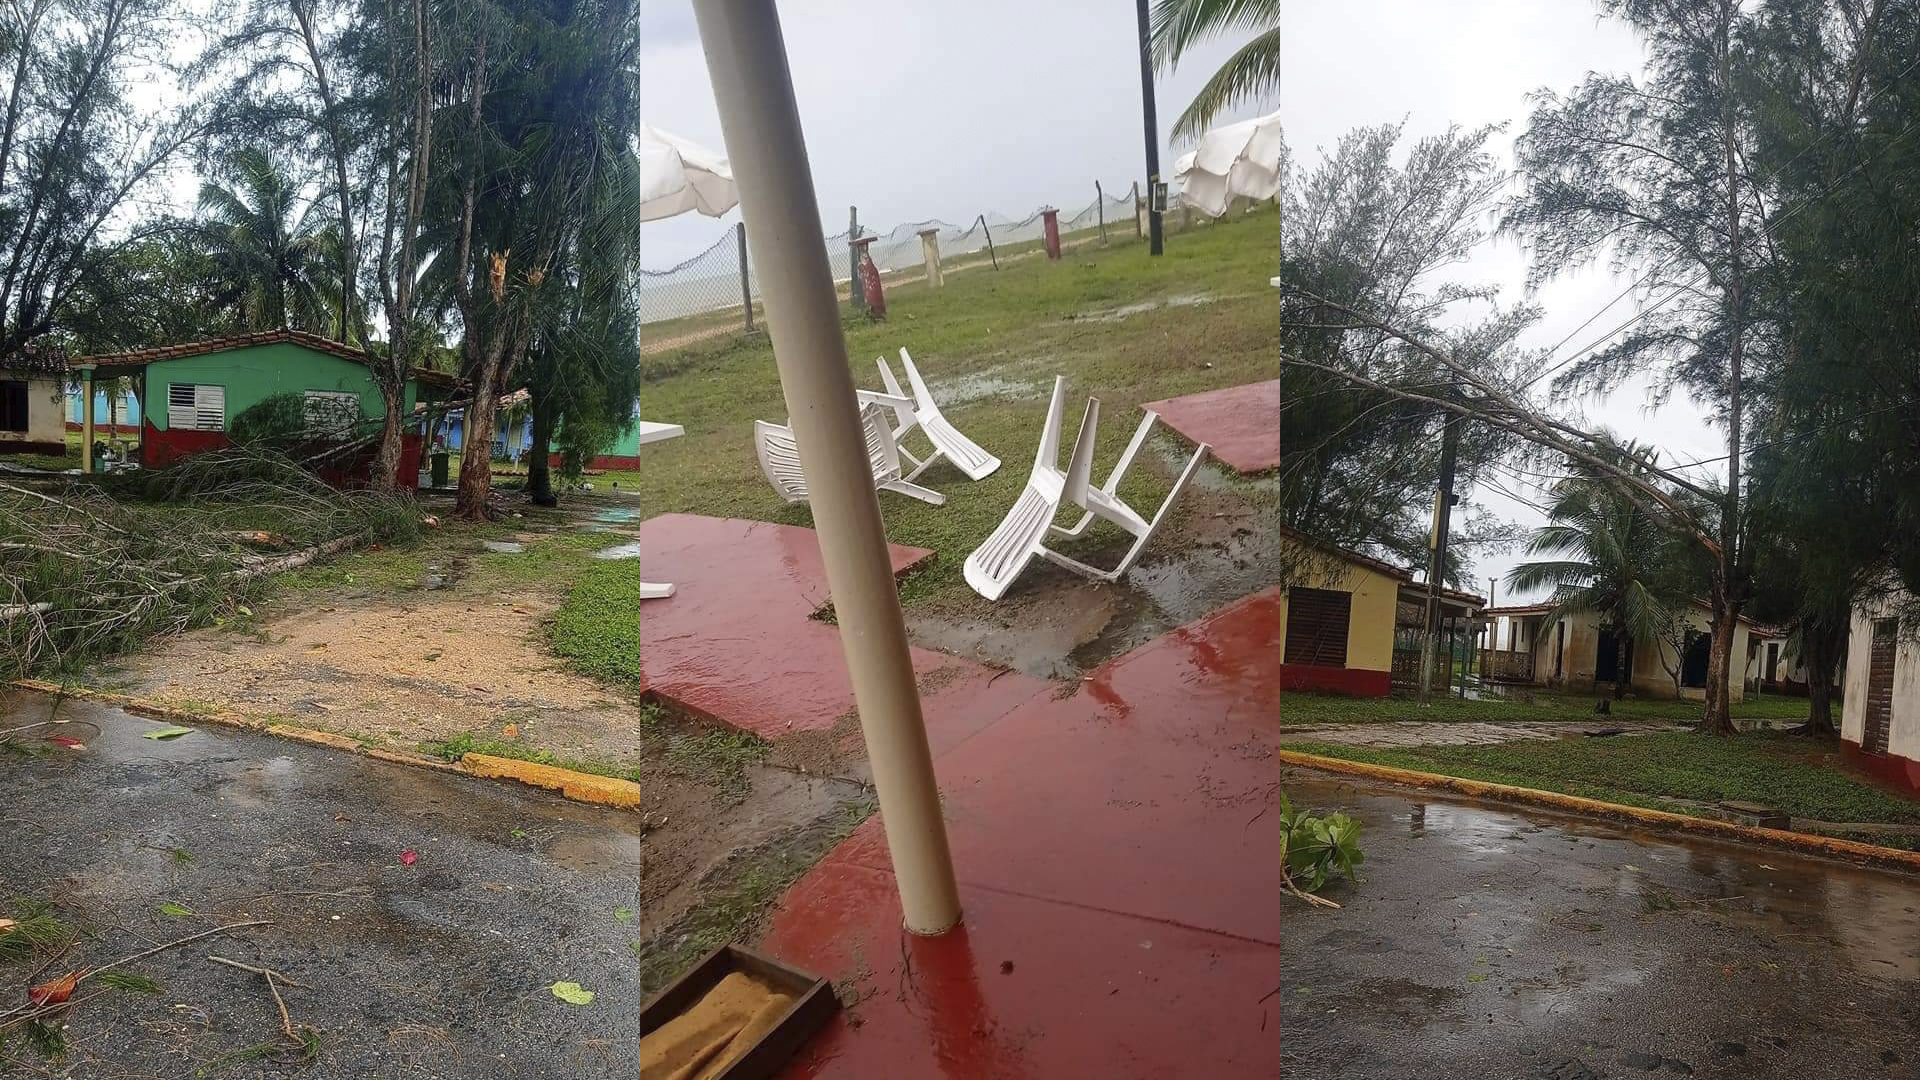 Tormenta local severa afecta instalaciones de campismo en Pinar del Río